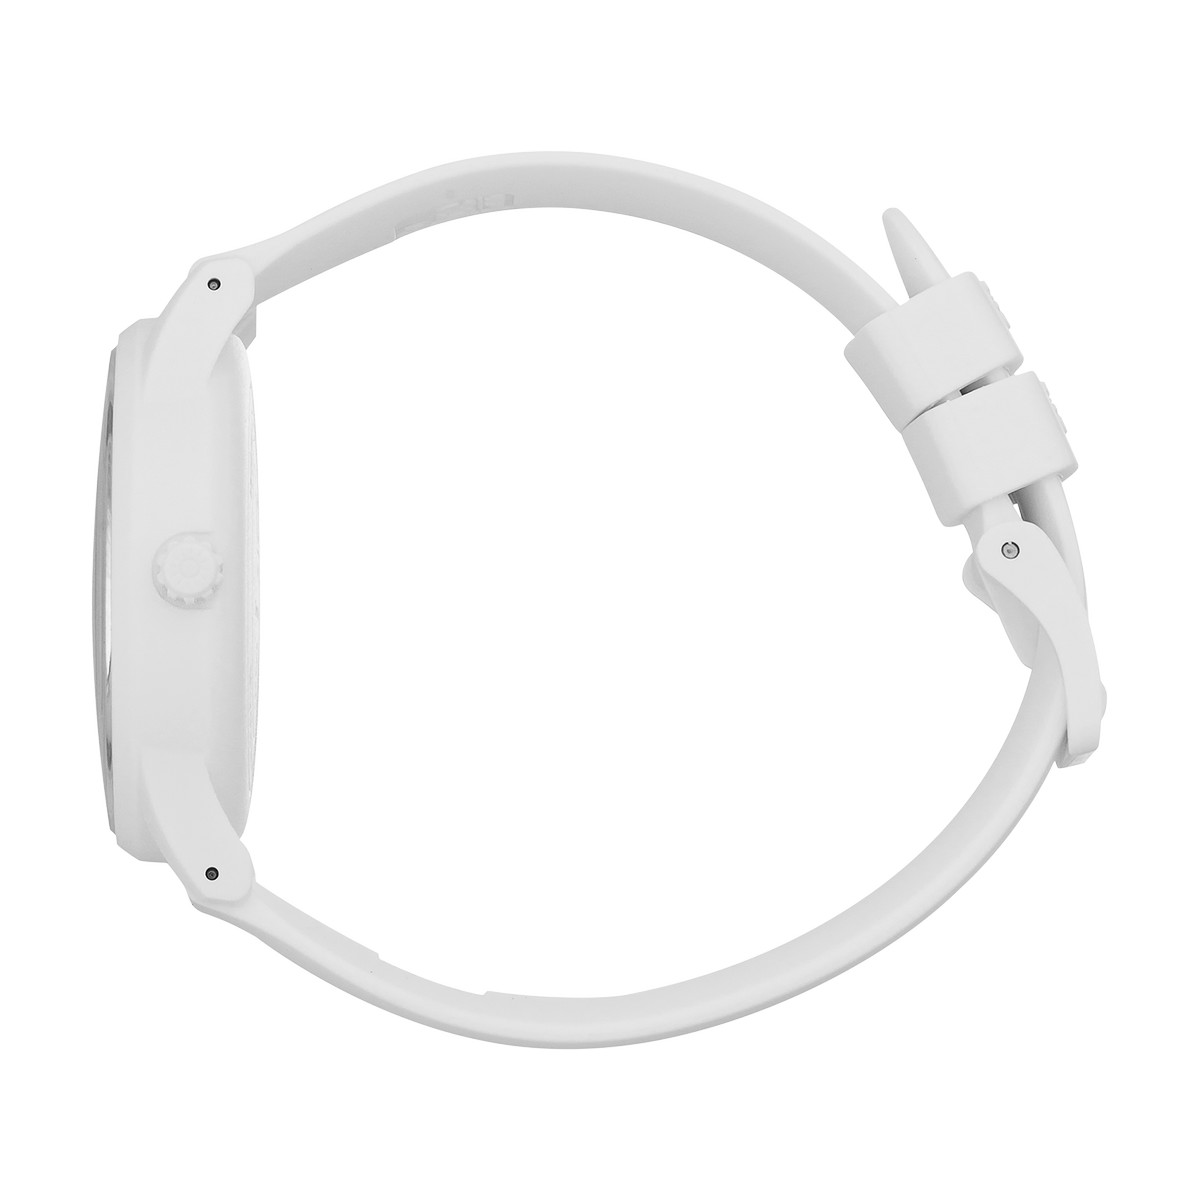 Montre Ice watch femme solaire bracelet plastique blanc - vue 2